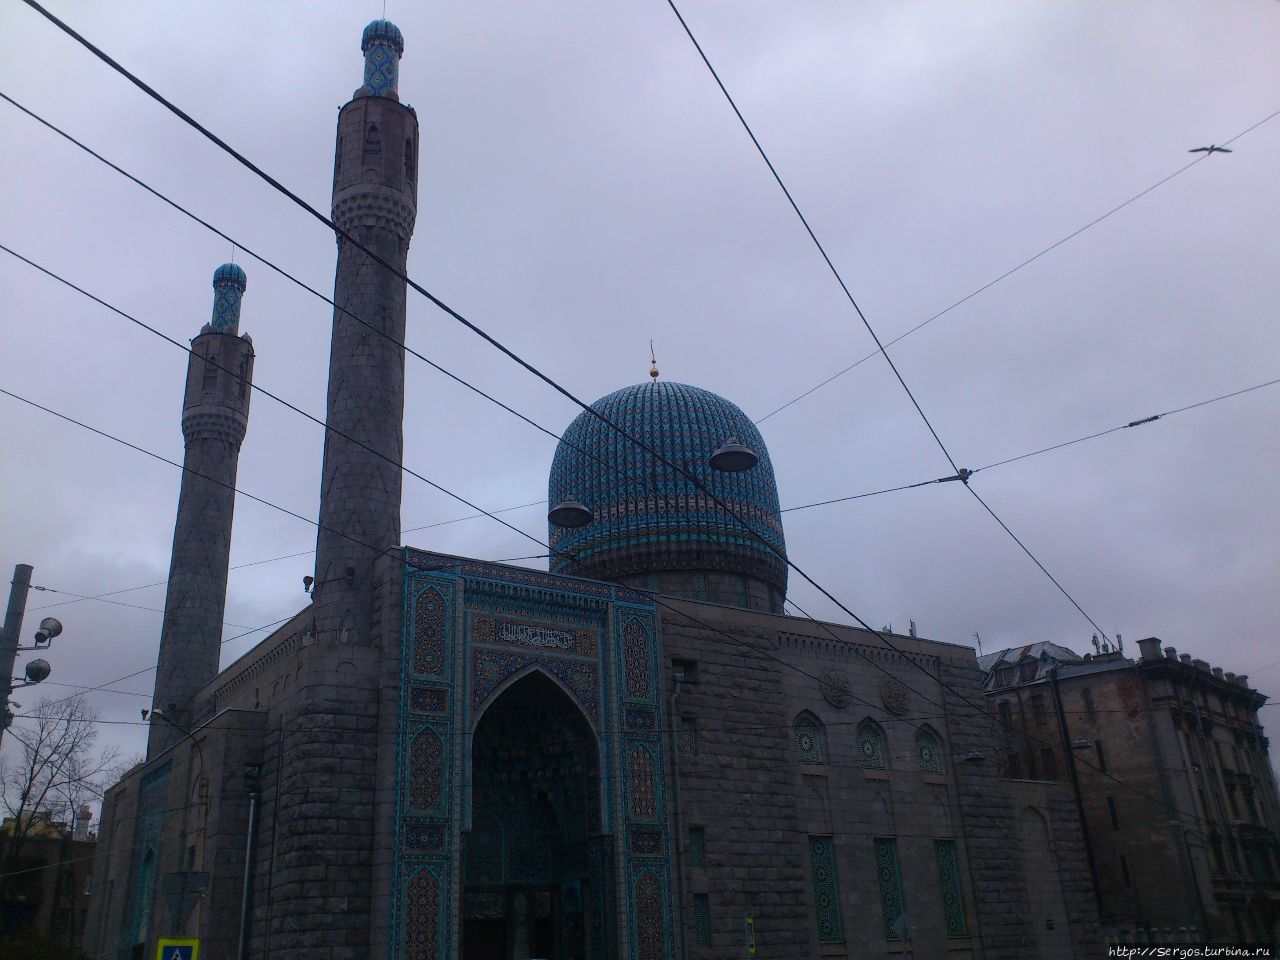 удивительно, но соборная мечеть активно достраивалась уже при сов. власти Санкт-Петербург, Россия